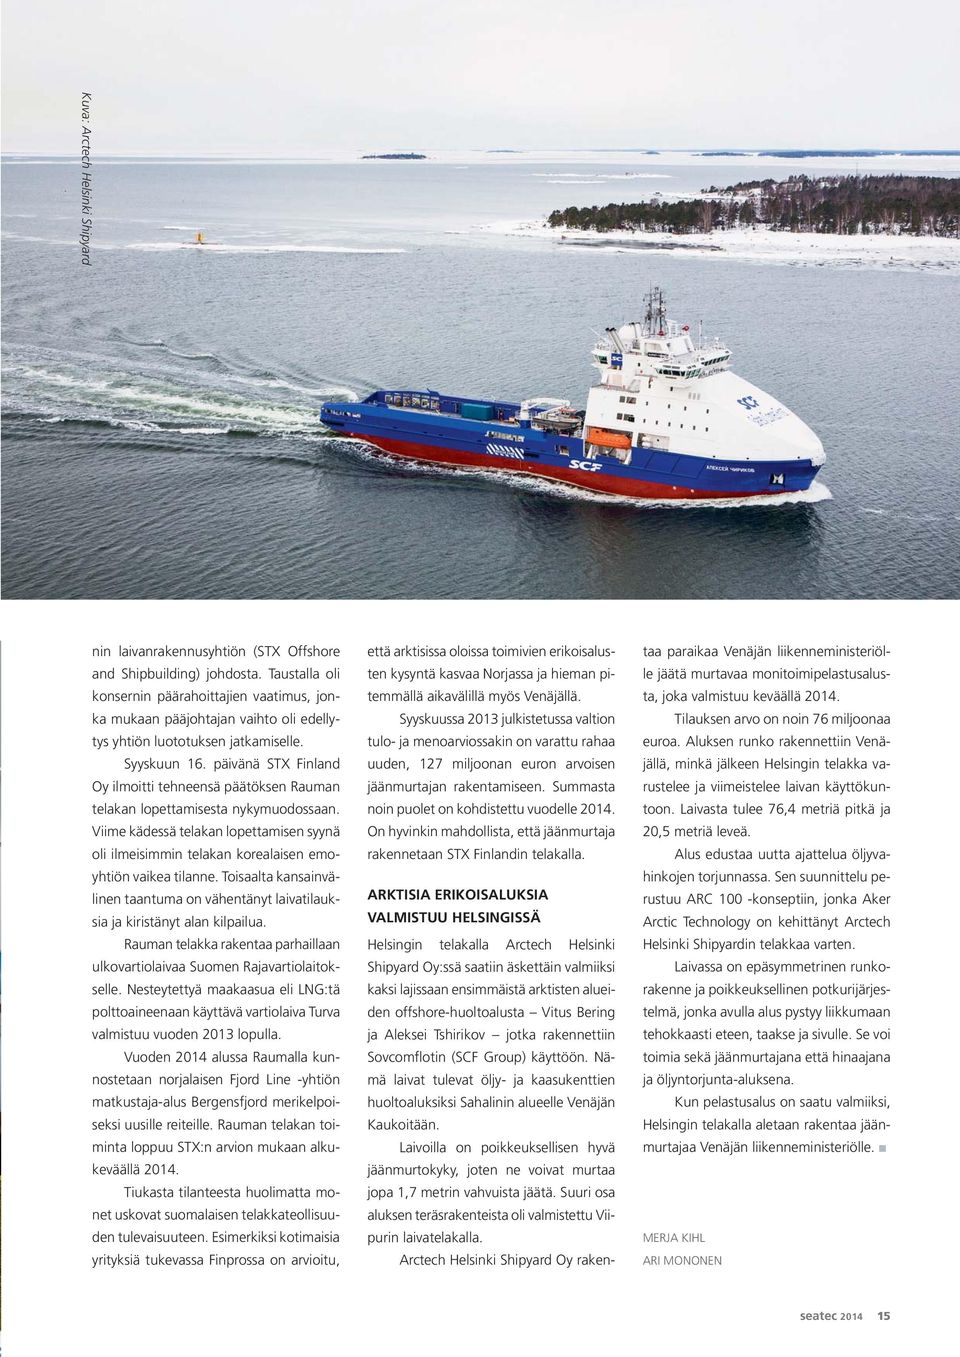 päivänä STX Finland Oy ilmoitti tehneensä päätöksen Rauman telakan lopettamisesta nykymuodossaan. Viime kädessä telakan lopettamisen syynä oli ilmeisimmin telakan korealaisen emoyhtiön vaikea tilanne.